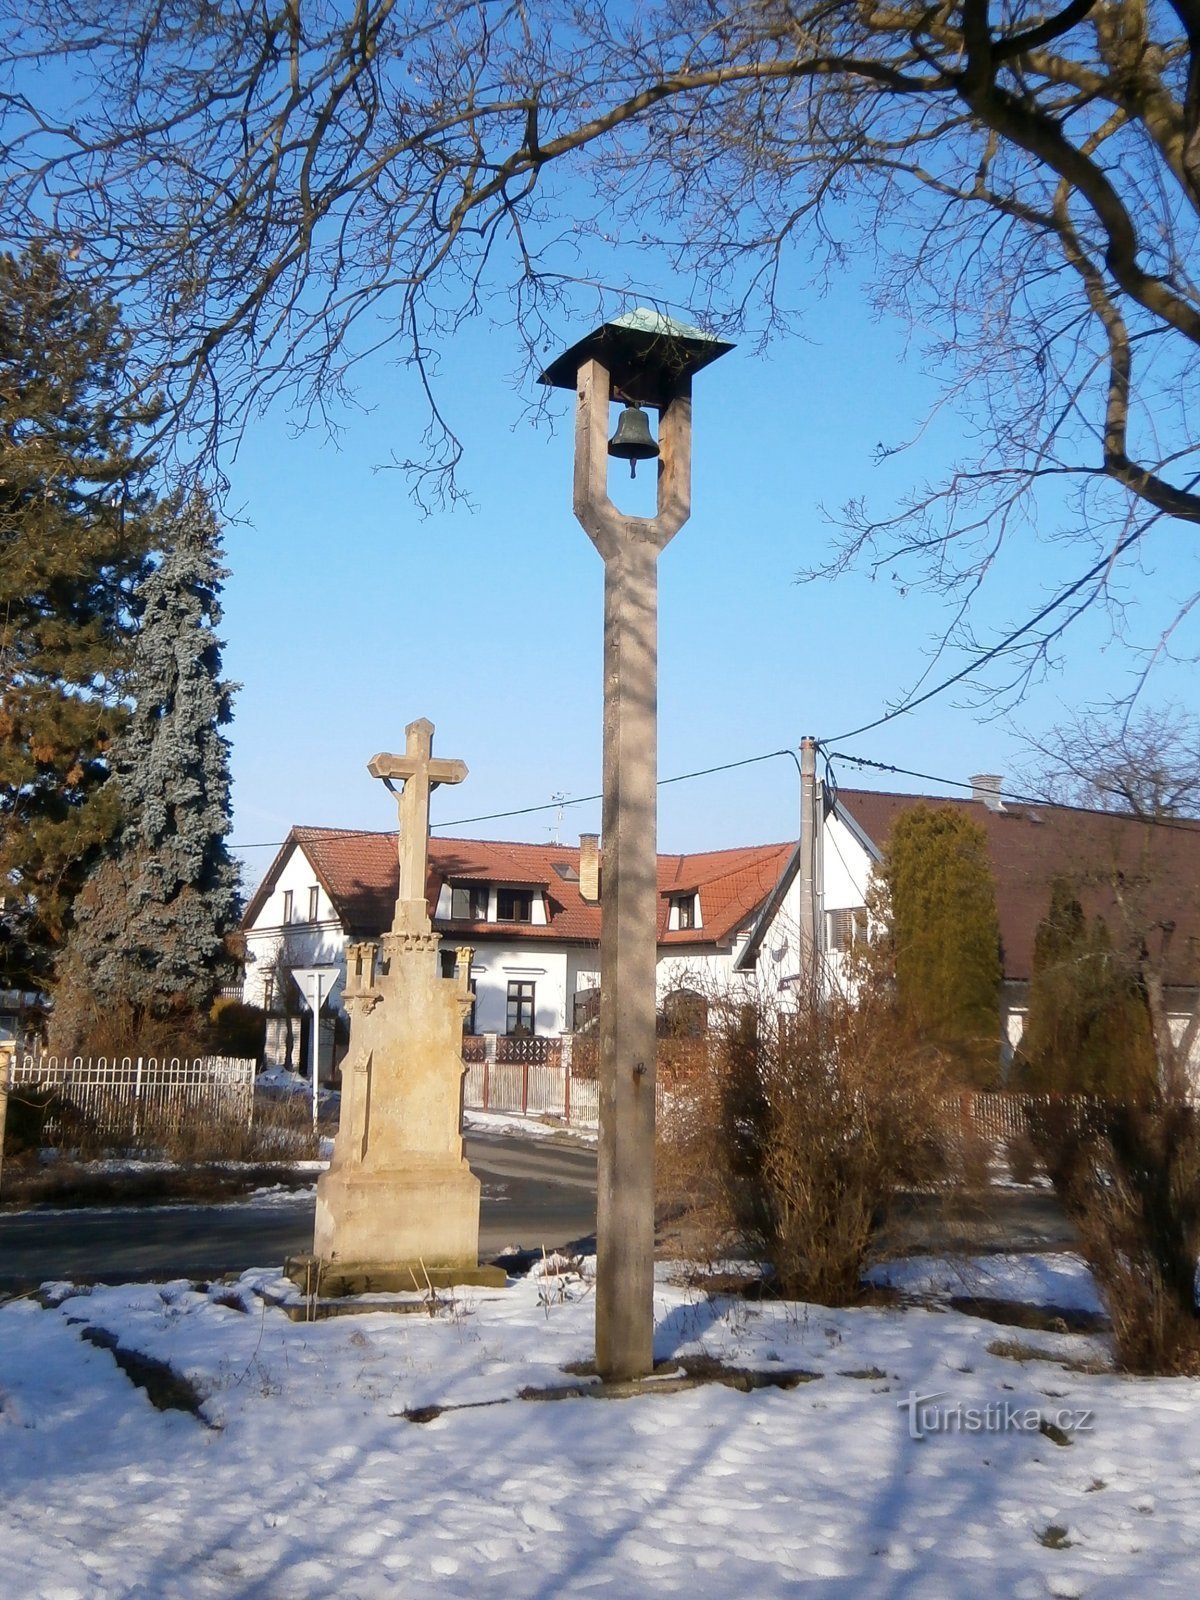 Колокольня и крест в Роудничке (Градец Кралове, 14.2.2017 апреля XNUMX г.)